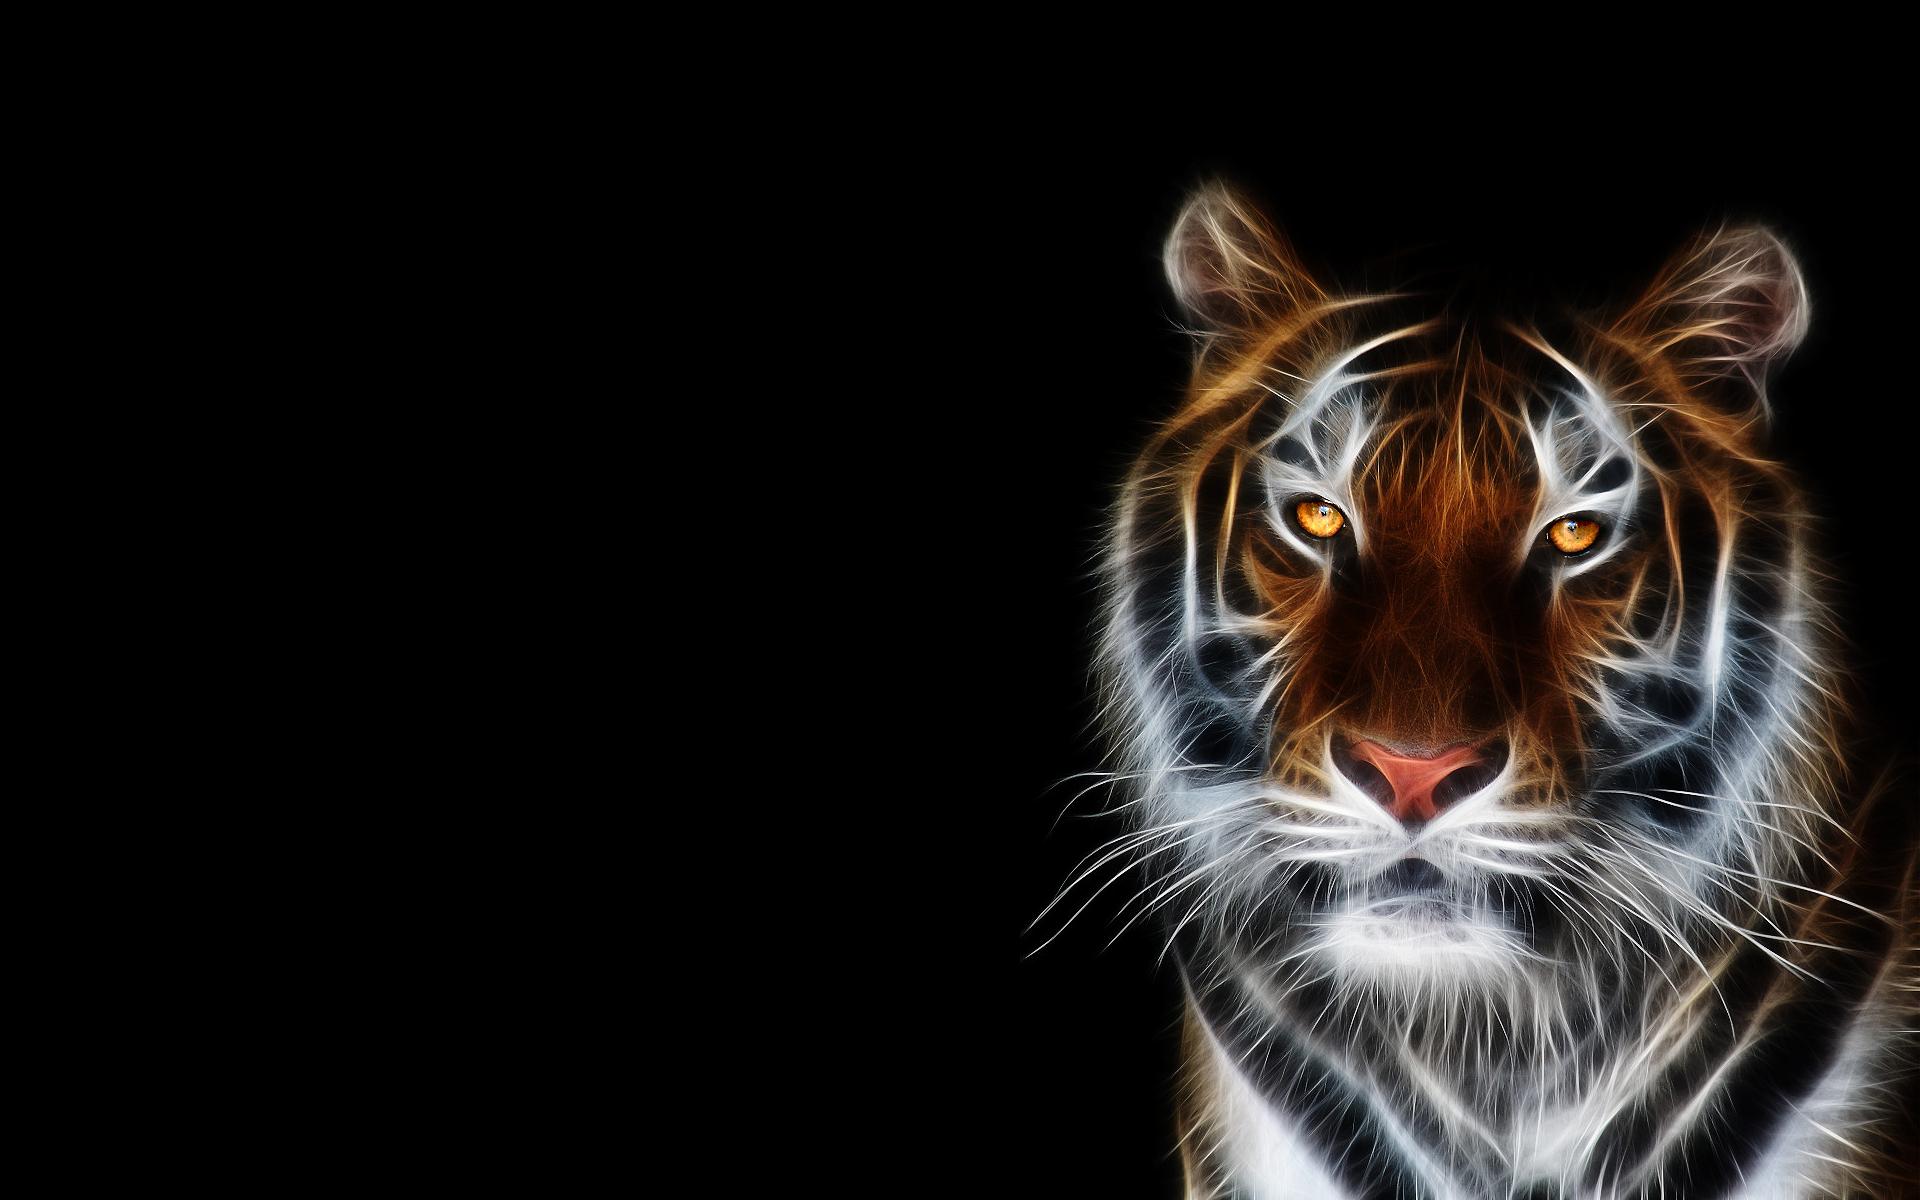 Nice Tiger Full HD Wallpaper. hdwallpaper